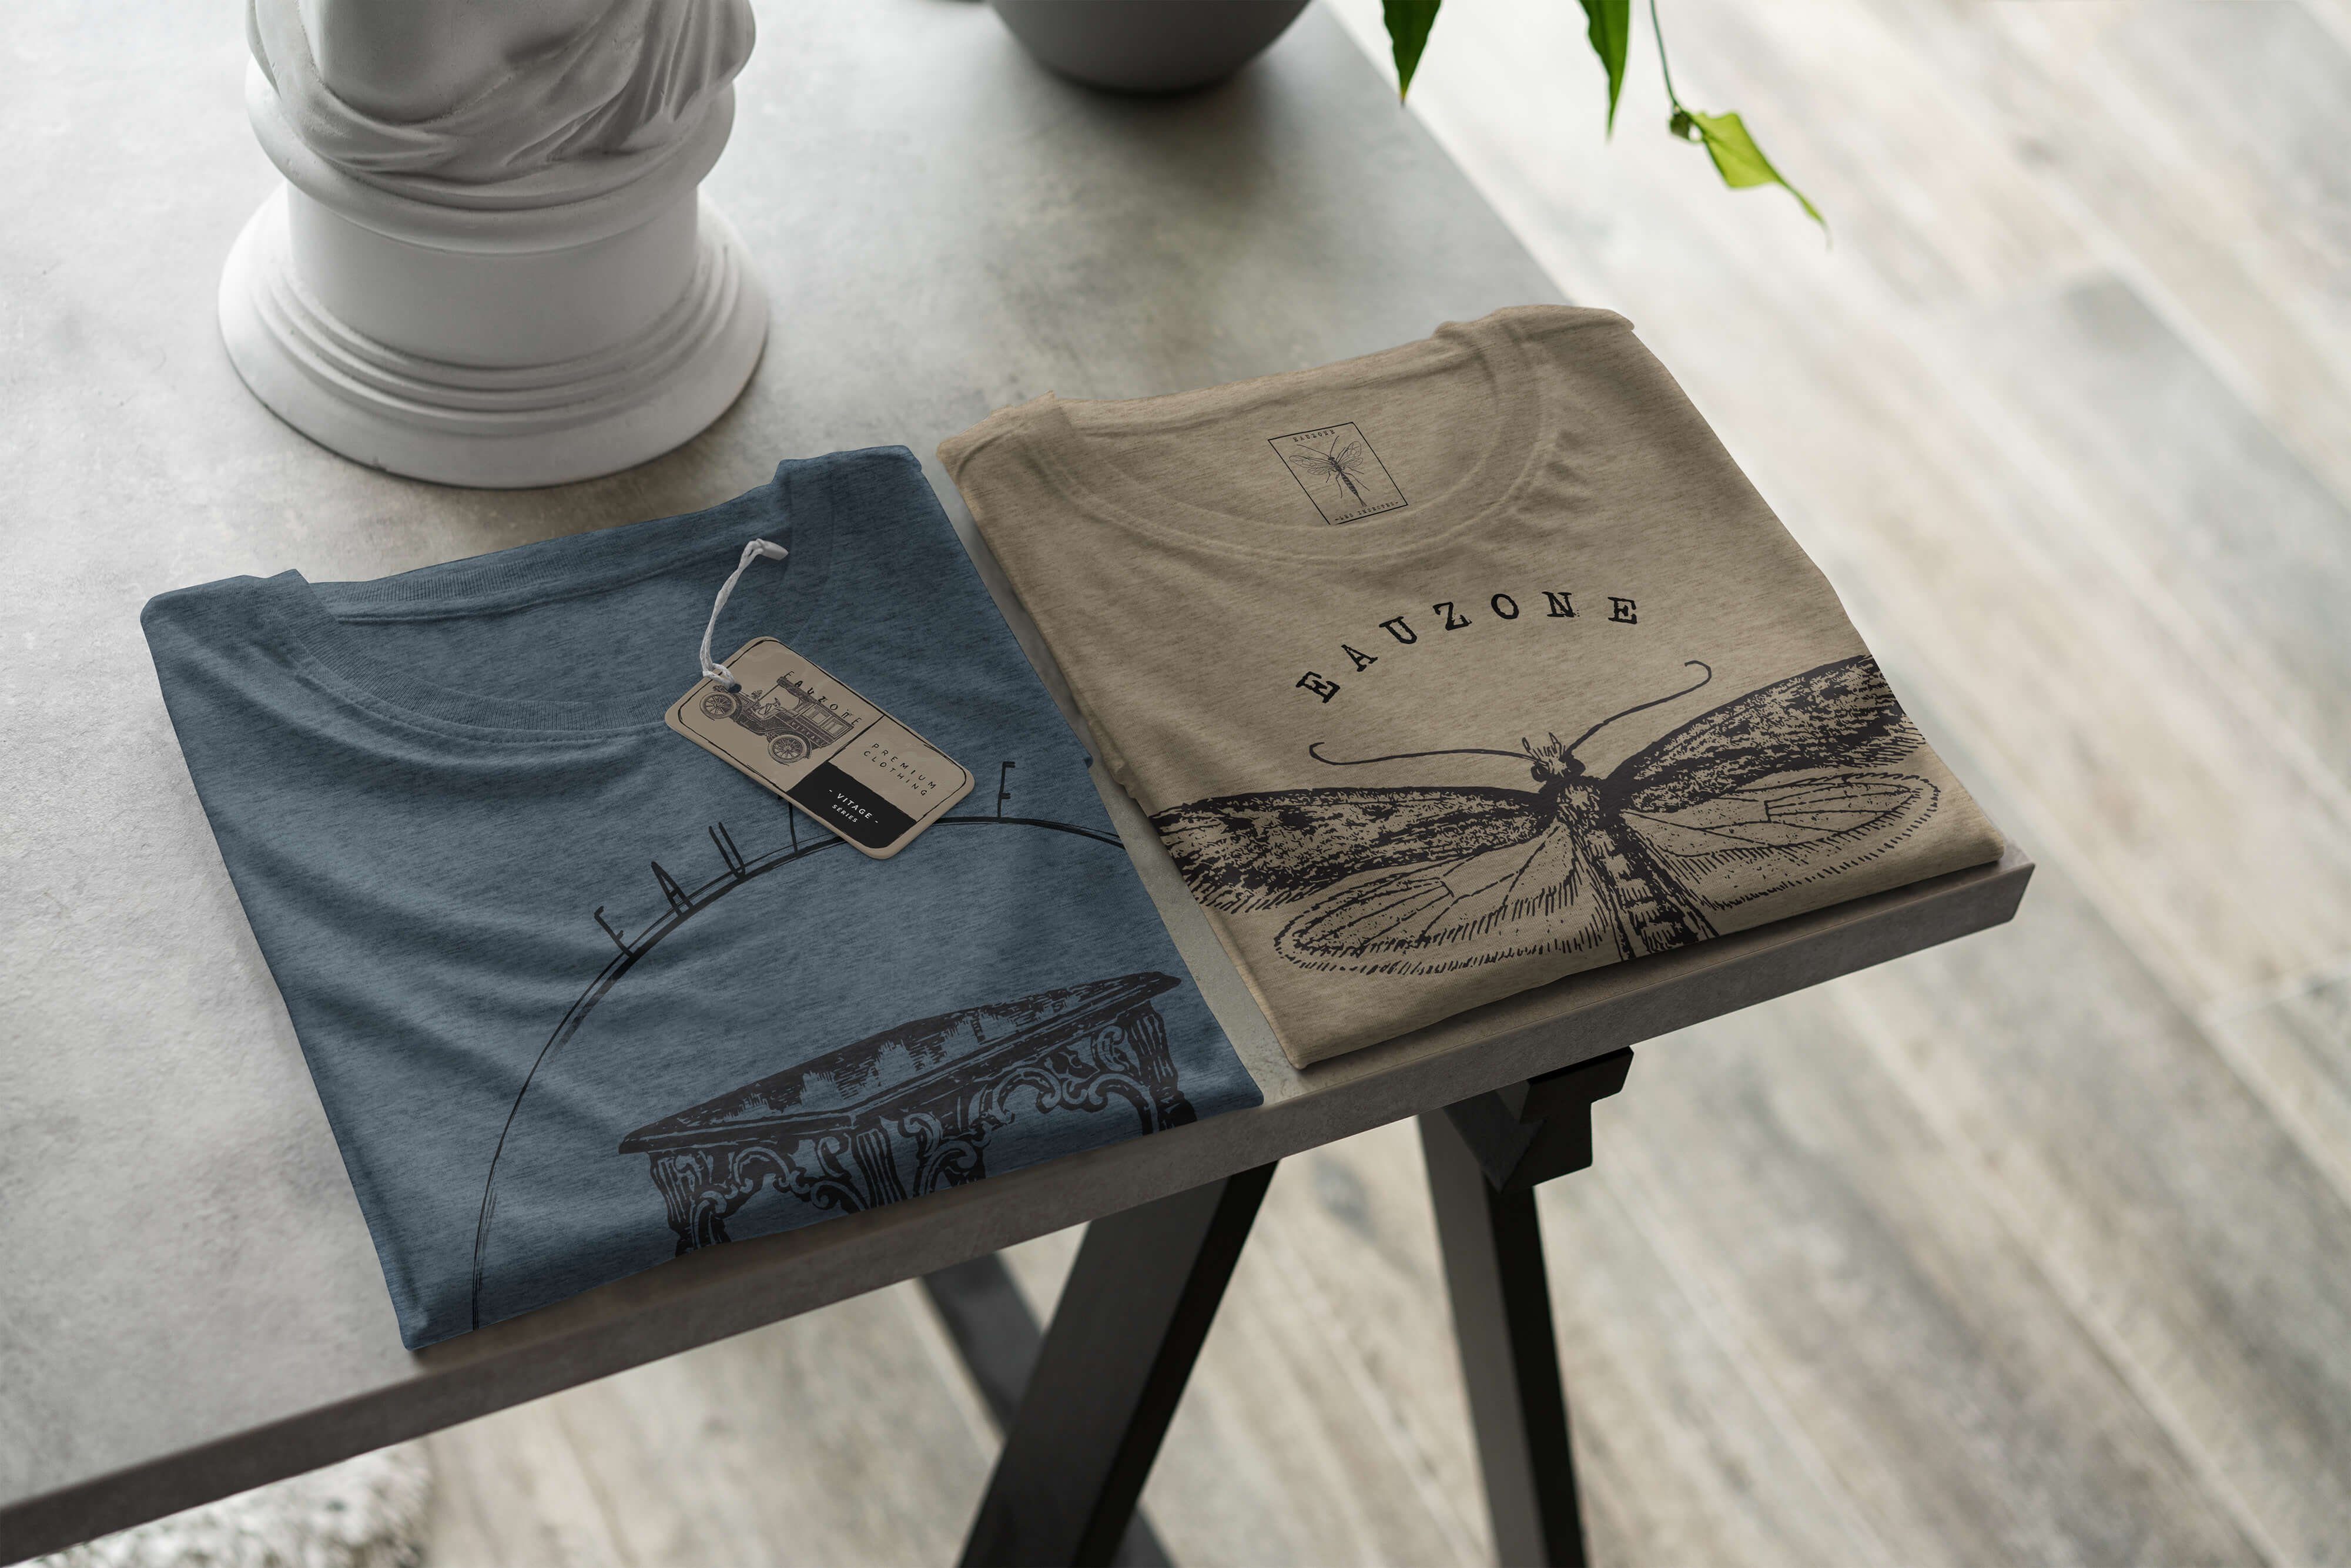 Sinus Art T-Shirt Herren Beistelltisch T-Shirt Vintage Indigo